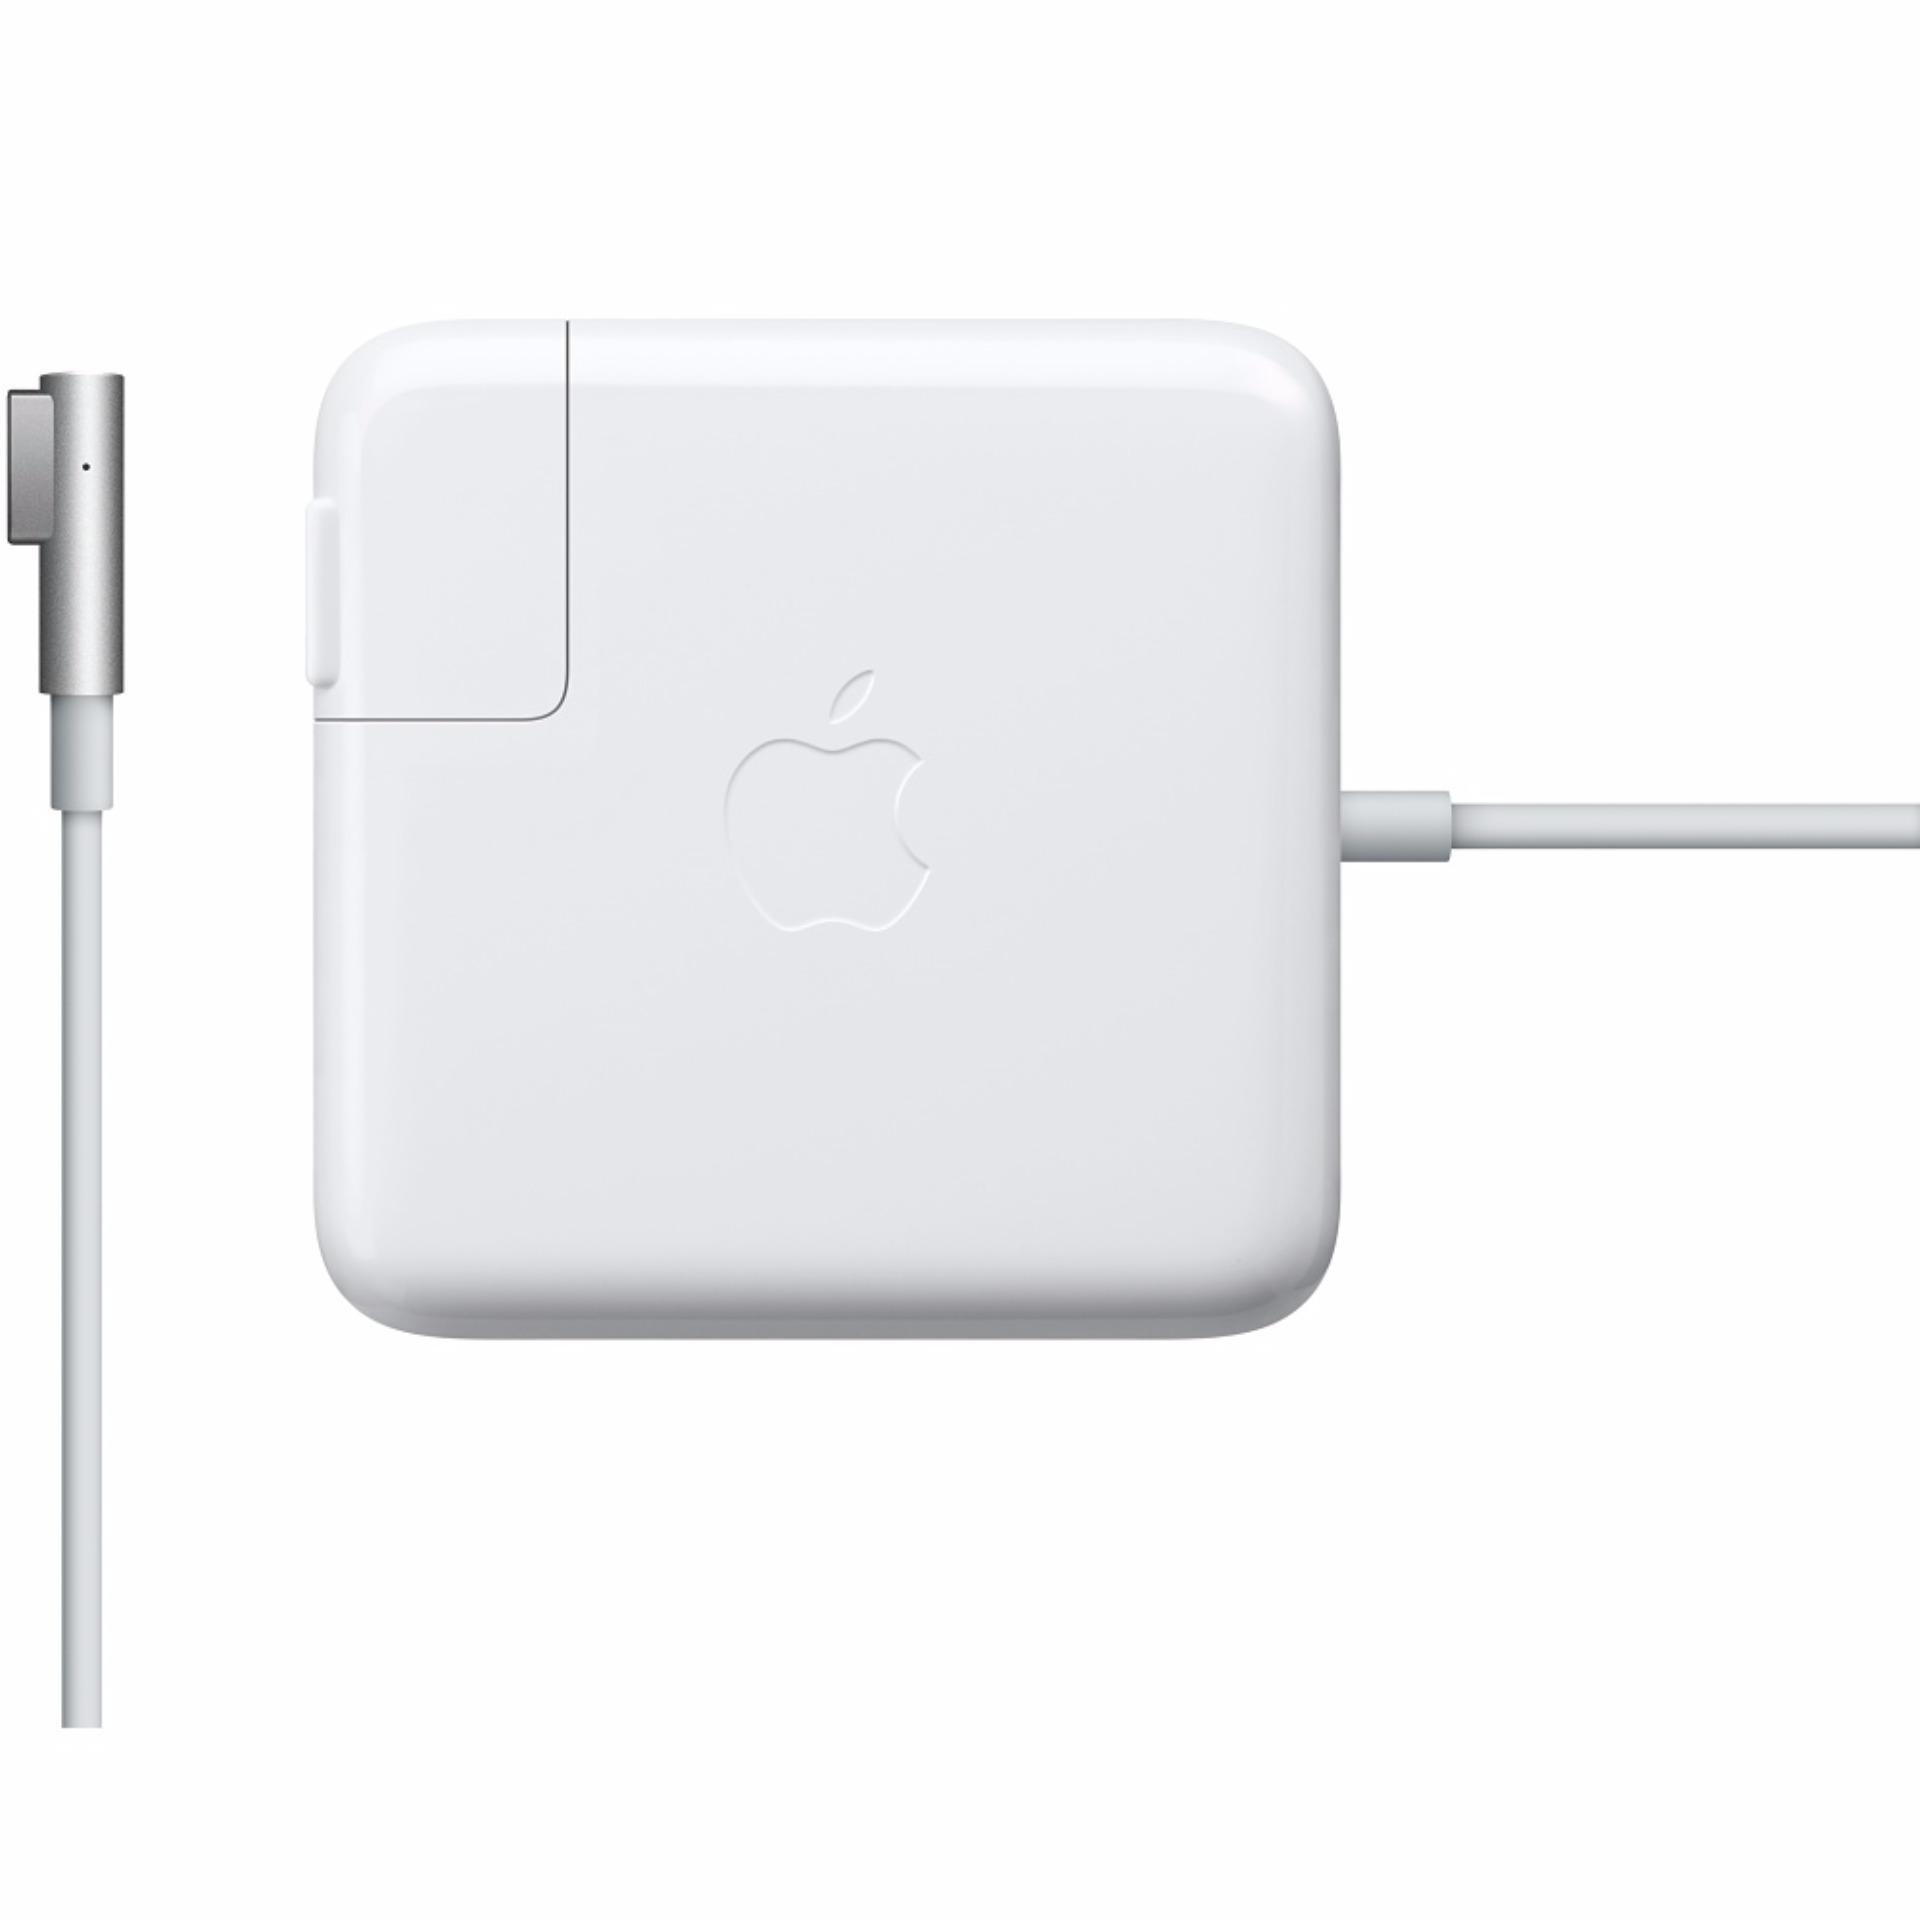 Sạc Apple Macbook Magsafe 1 45W (Trắng) - Hàng nhập khẩu